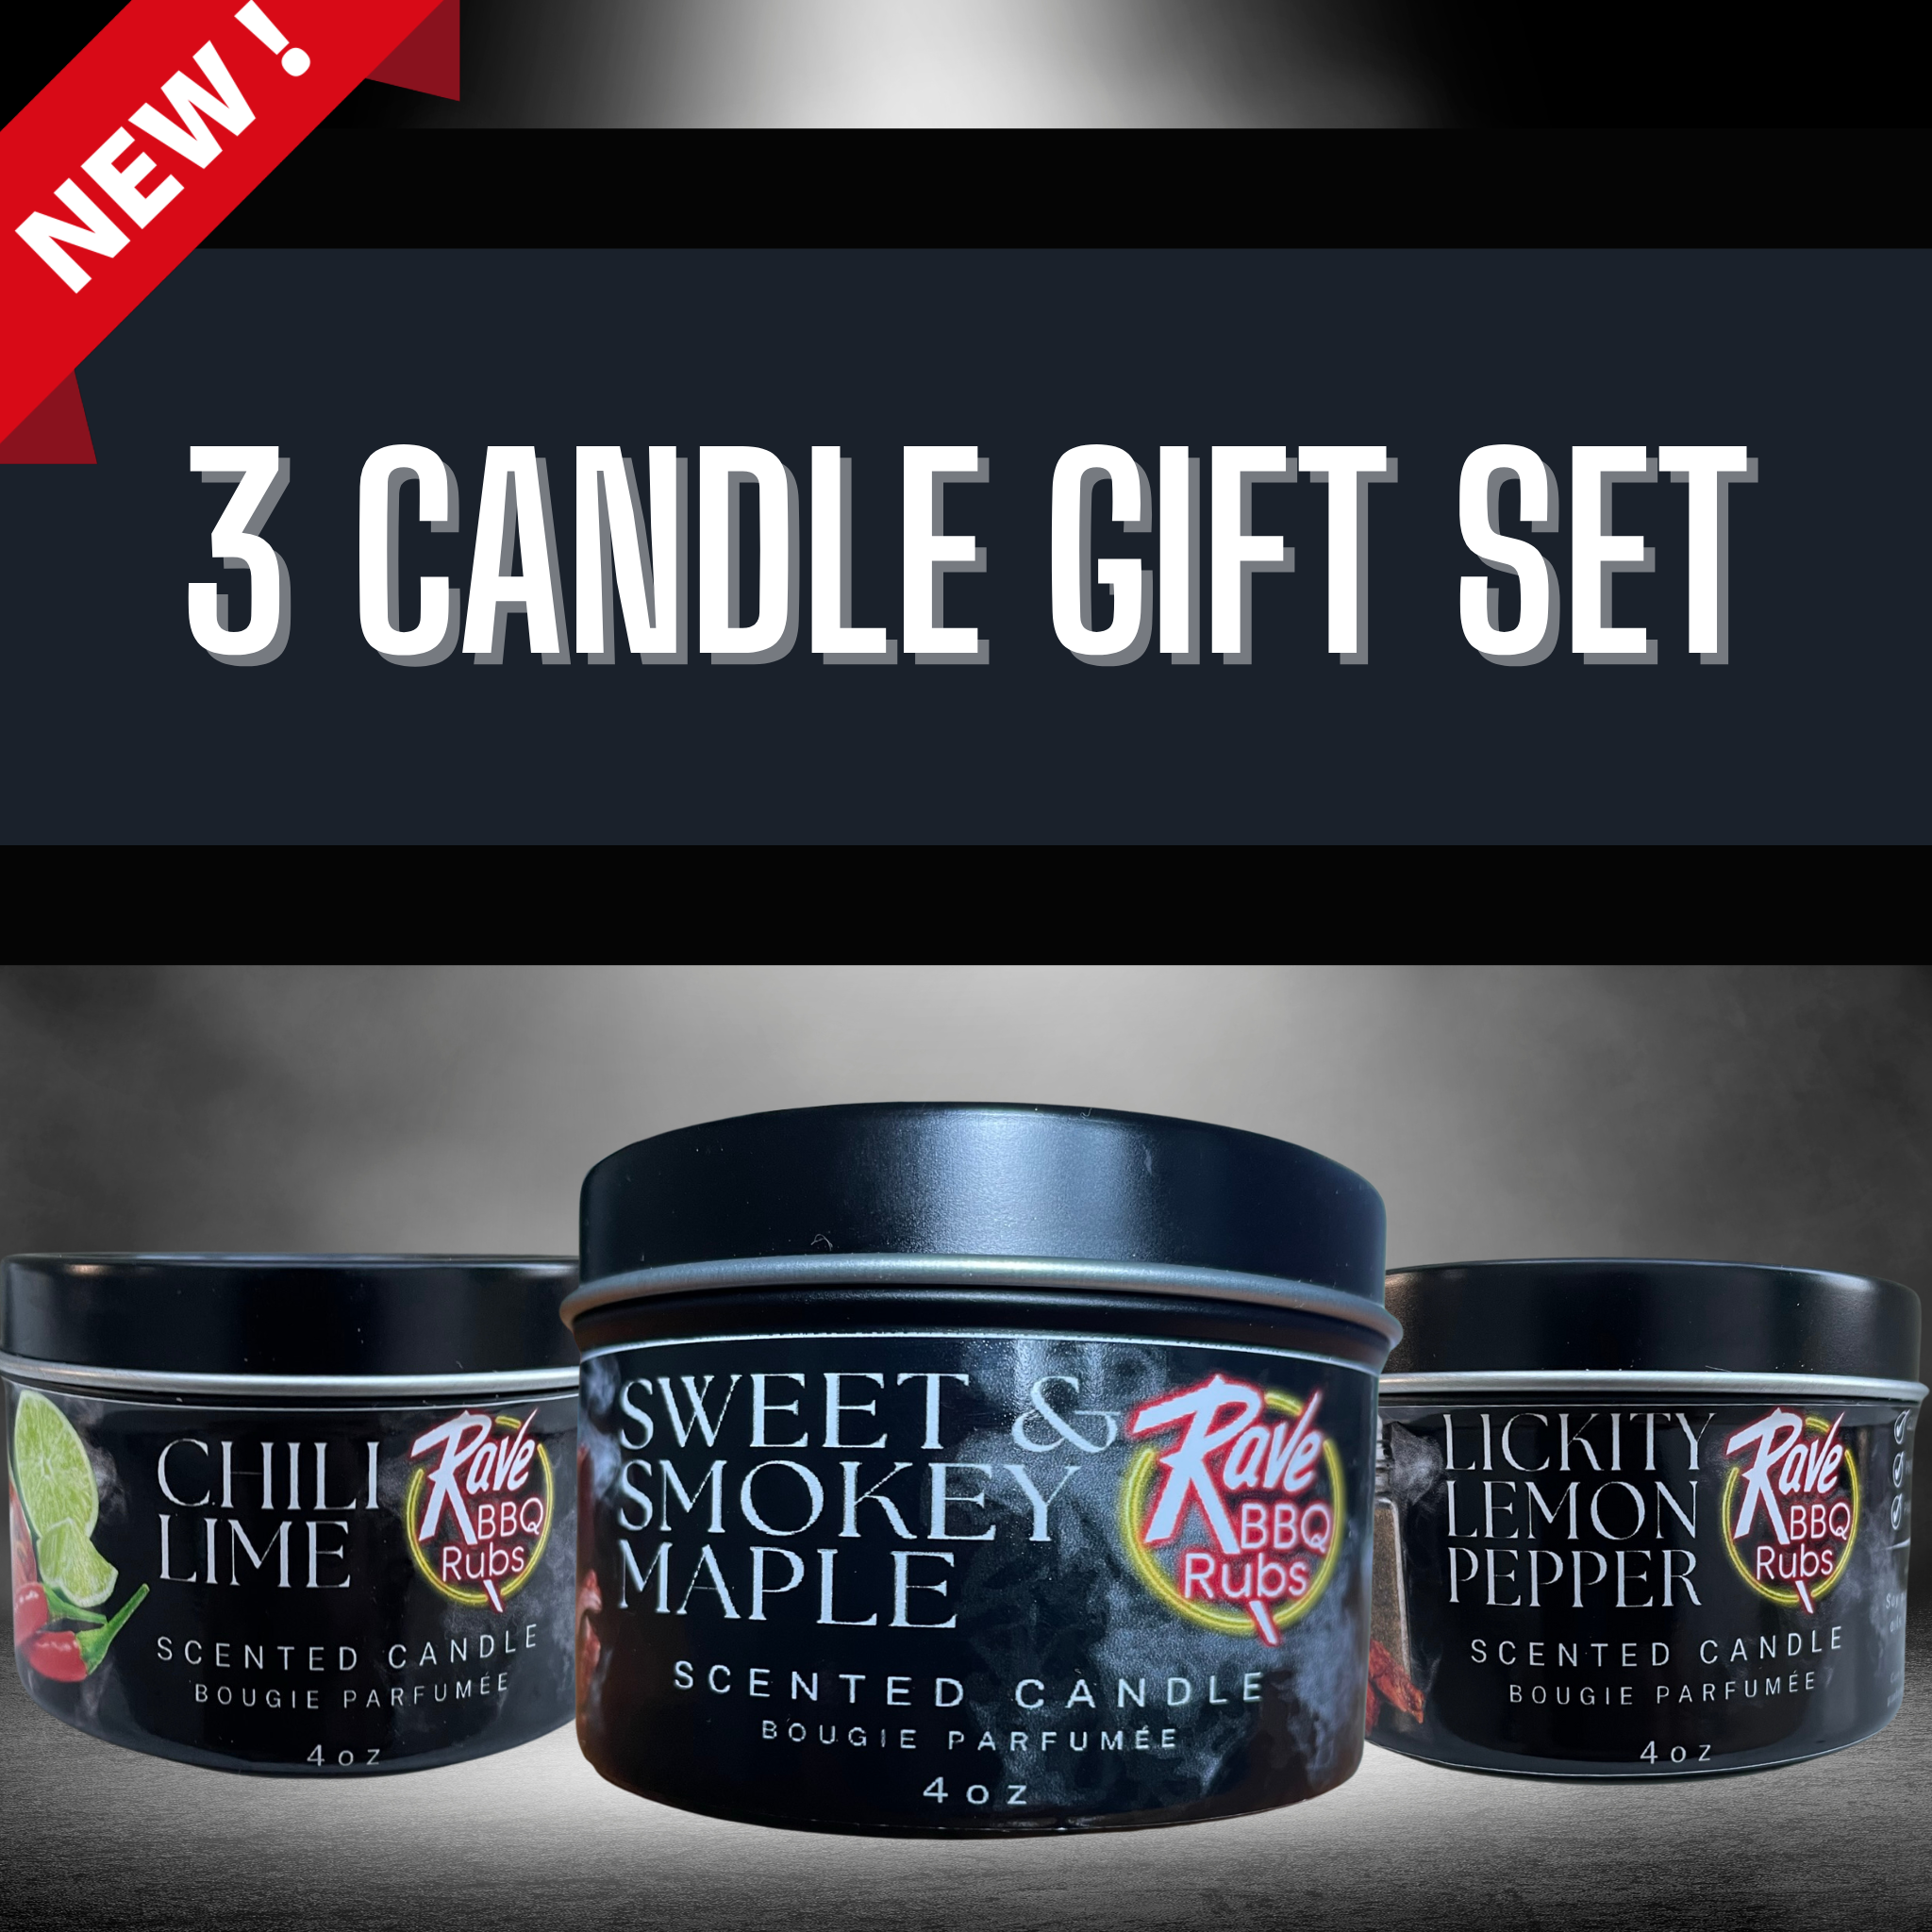 3 Candle Gift Set